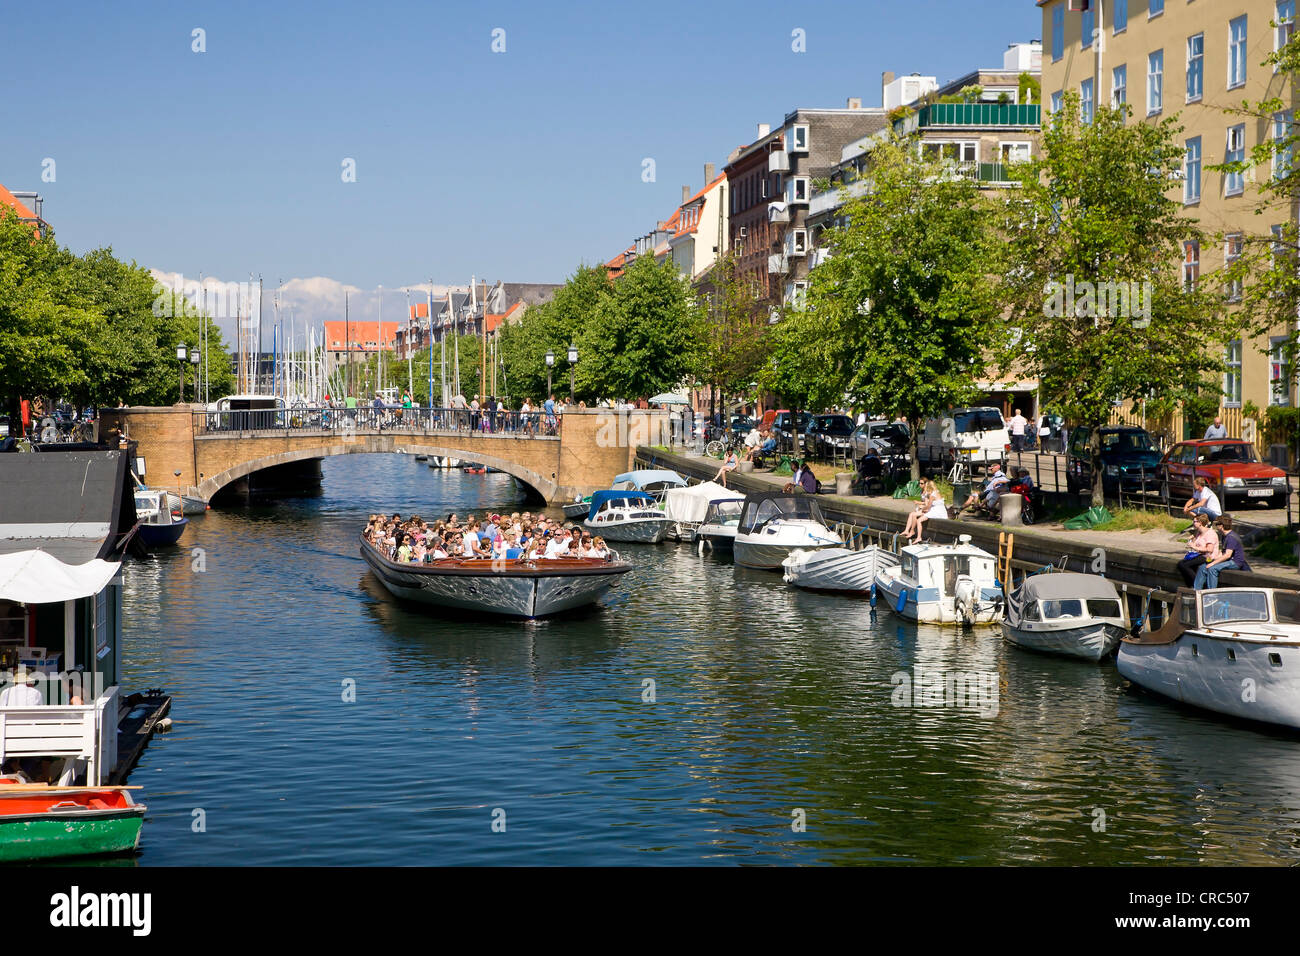 Tourboat in Christianshavns Canal, Copenhagen, Denmark, Europe Stock Photo